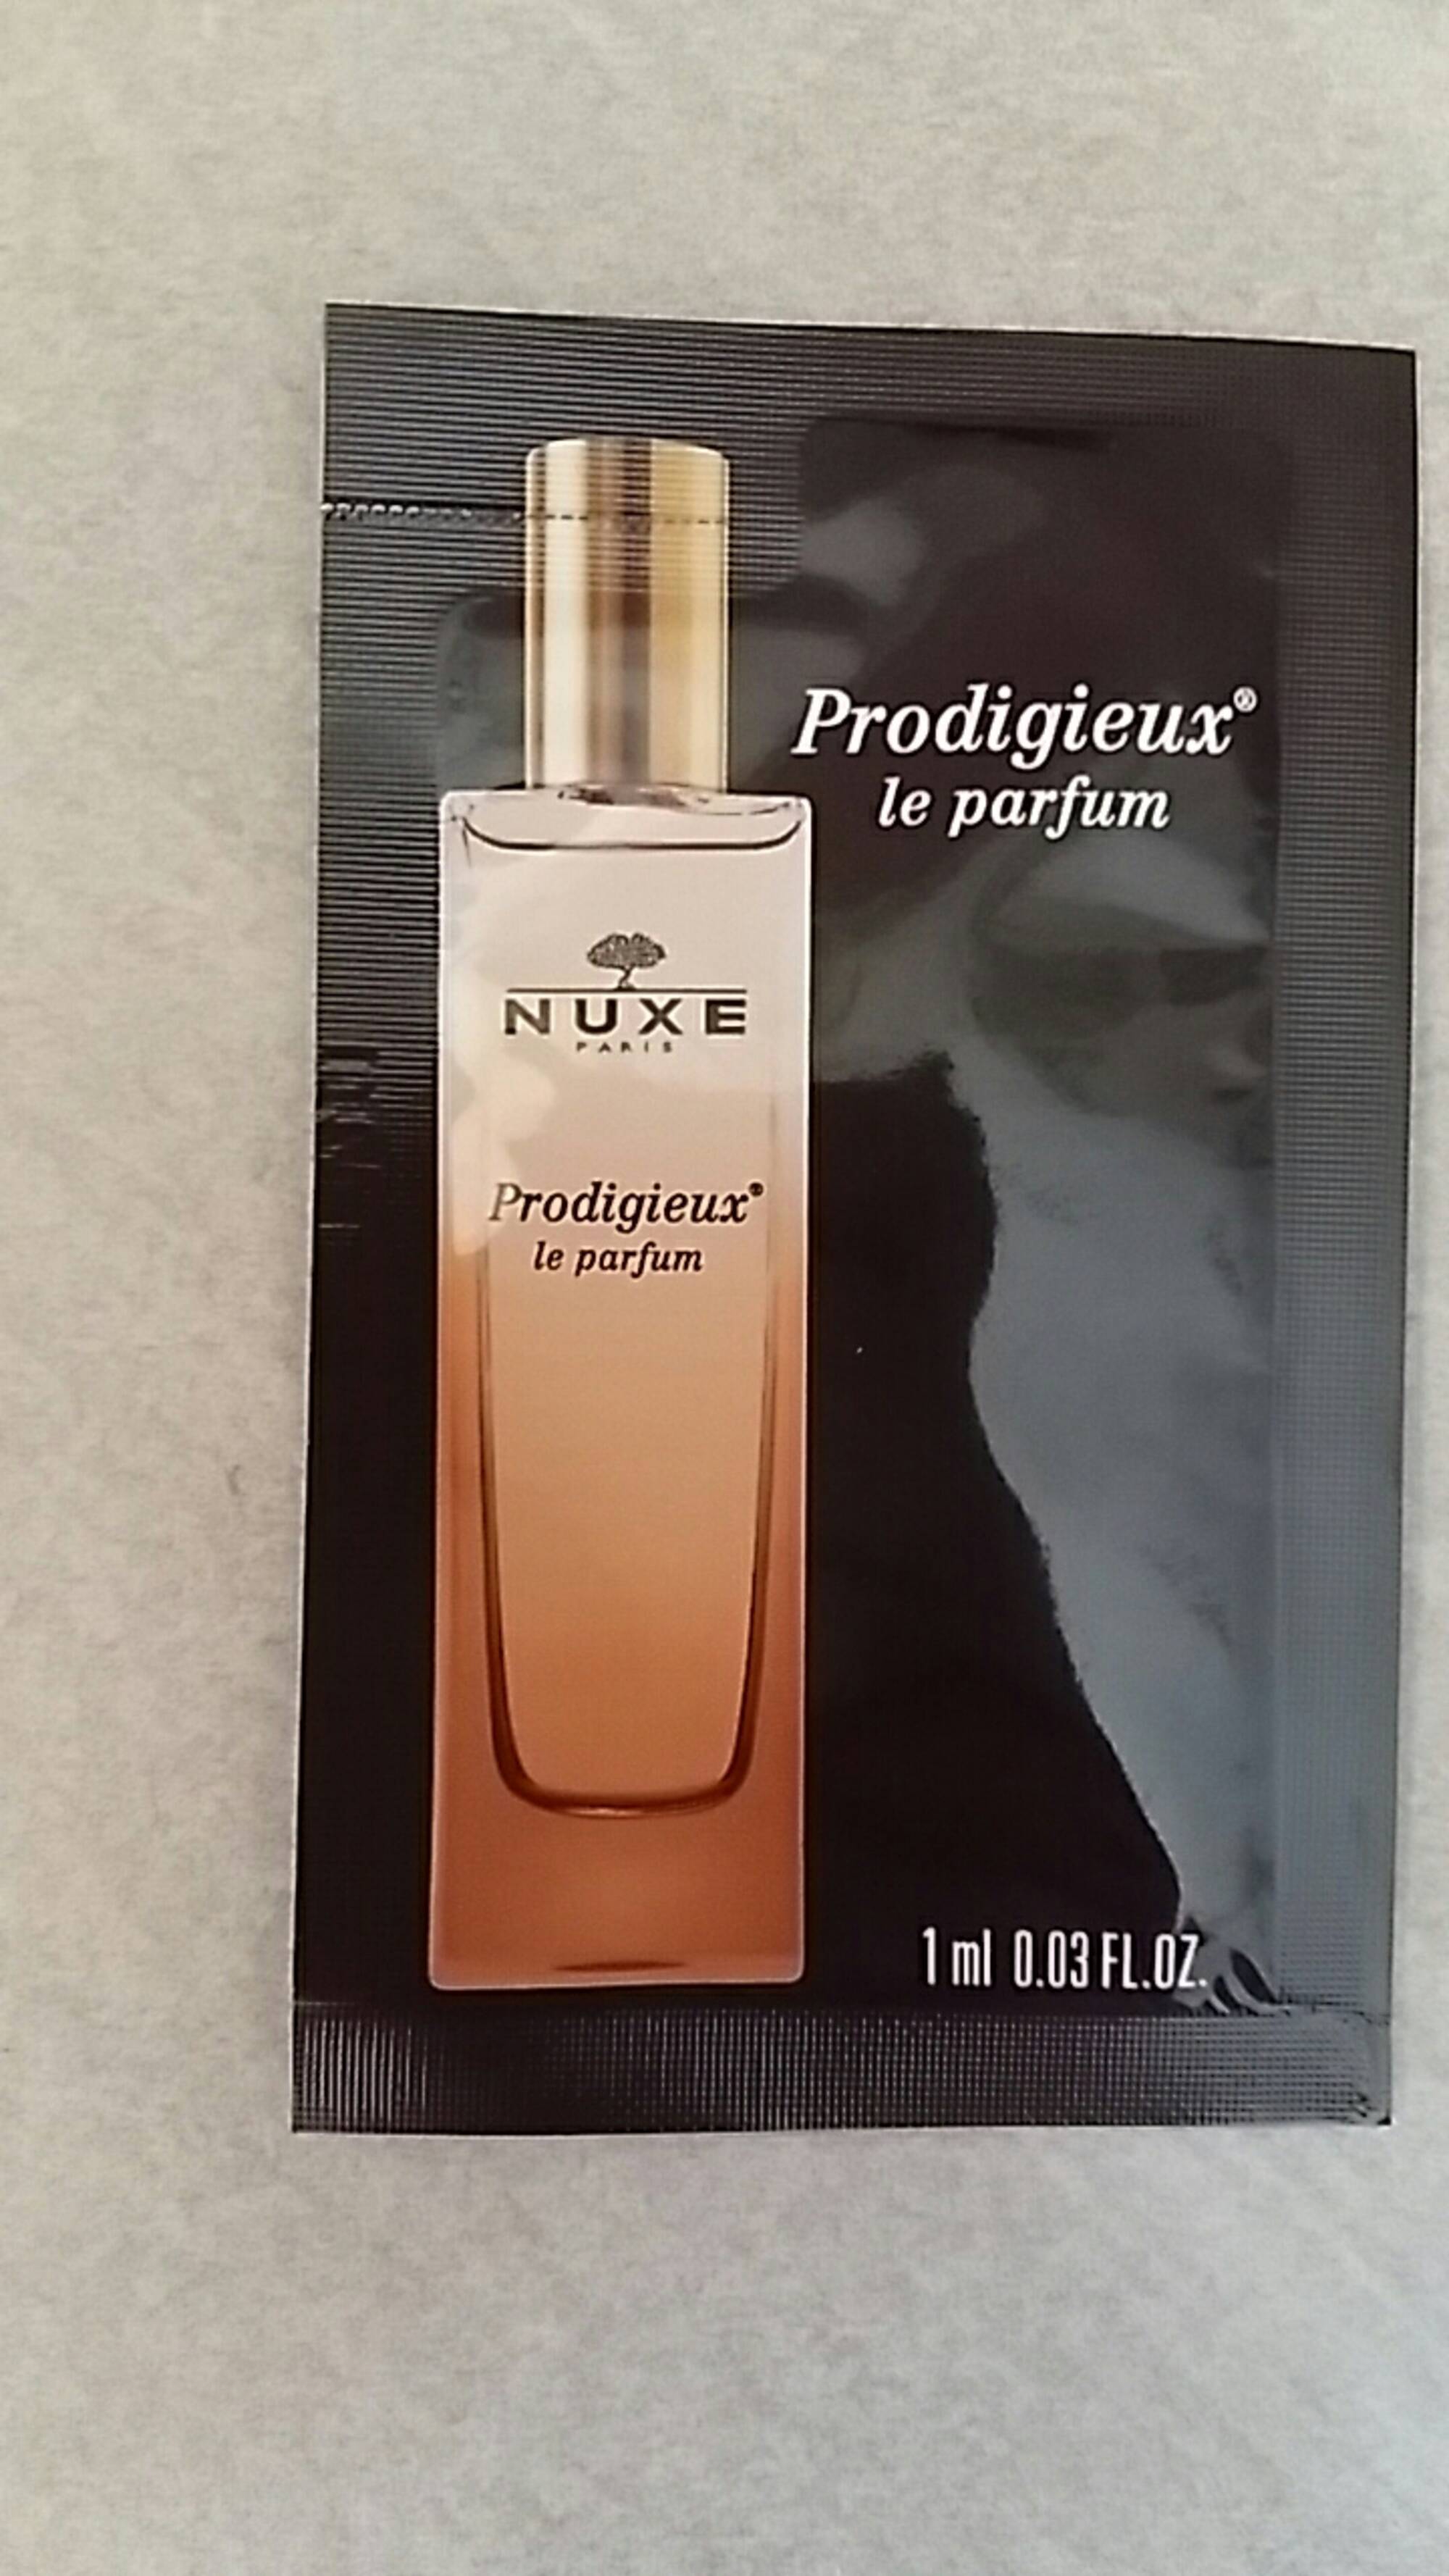 NUXE - Prodigieux le parfum - Eau de parfum